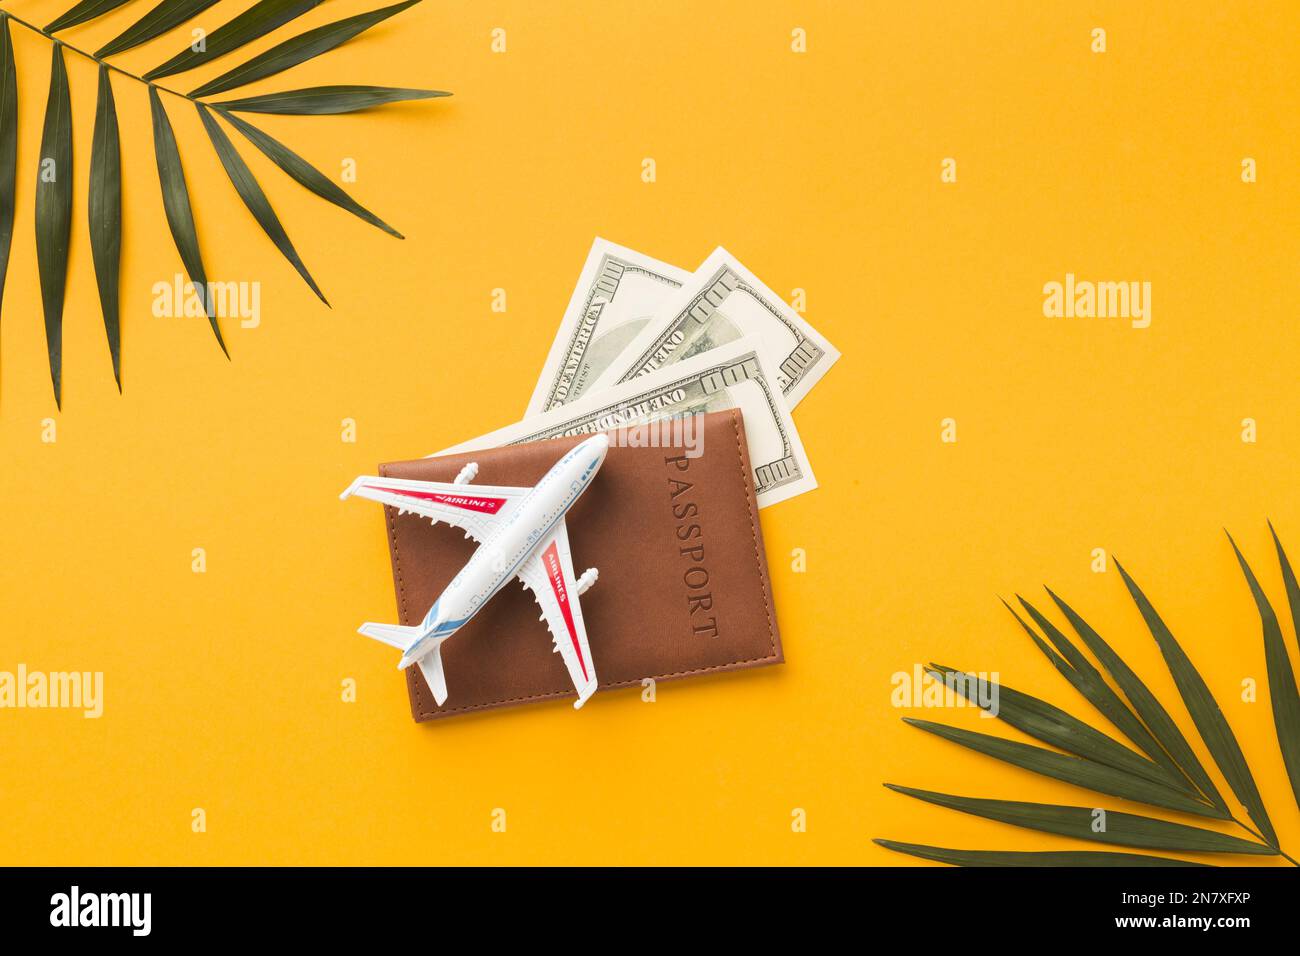 Flach liegender Pass mit Money-Flugzeug-Figur-Oberteil Stockfoto